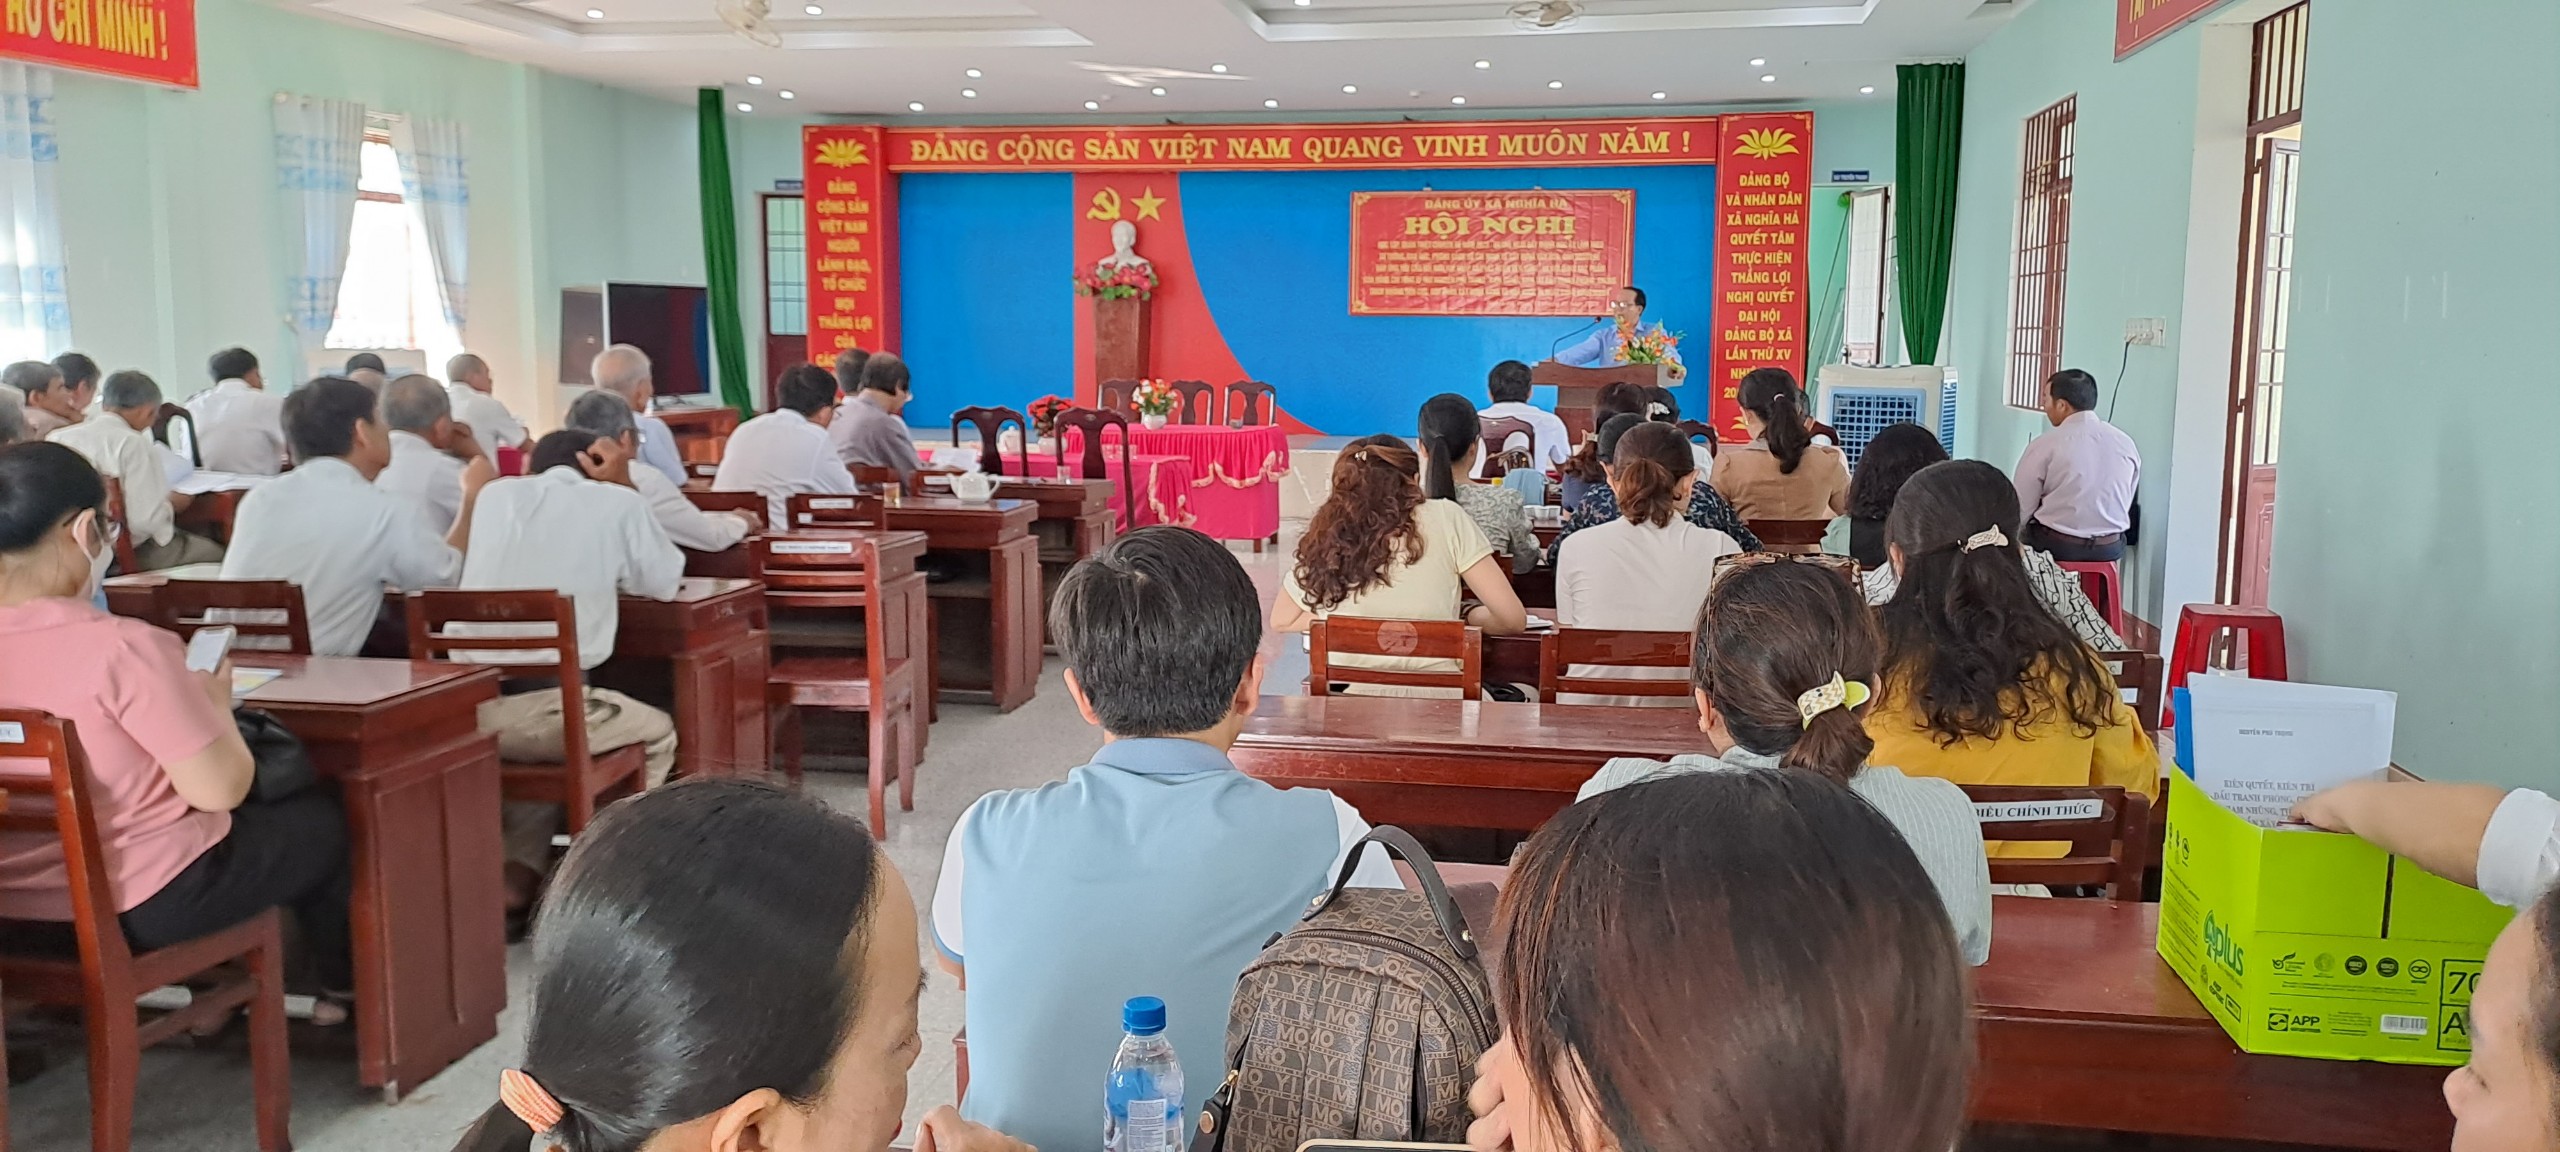 Đảng ủy xã Nghĩa Hà tổ chức Hội nghị Quán triệt, học tập chuyên đề năm 2023 đồng thời triển khai quán triệt nội dung tác phẩm của đồng chí Tổng Bí thư Nguyễn Phú Trọng